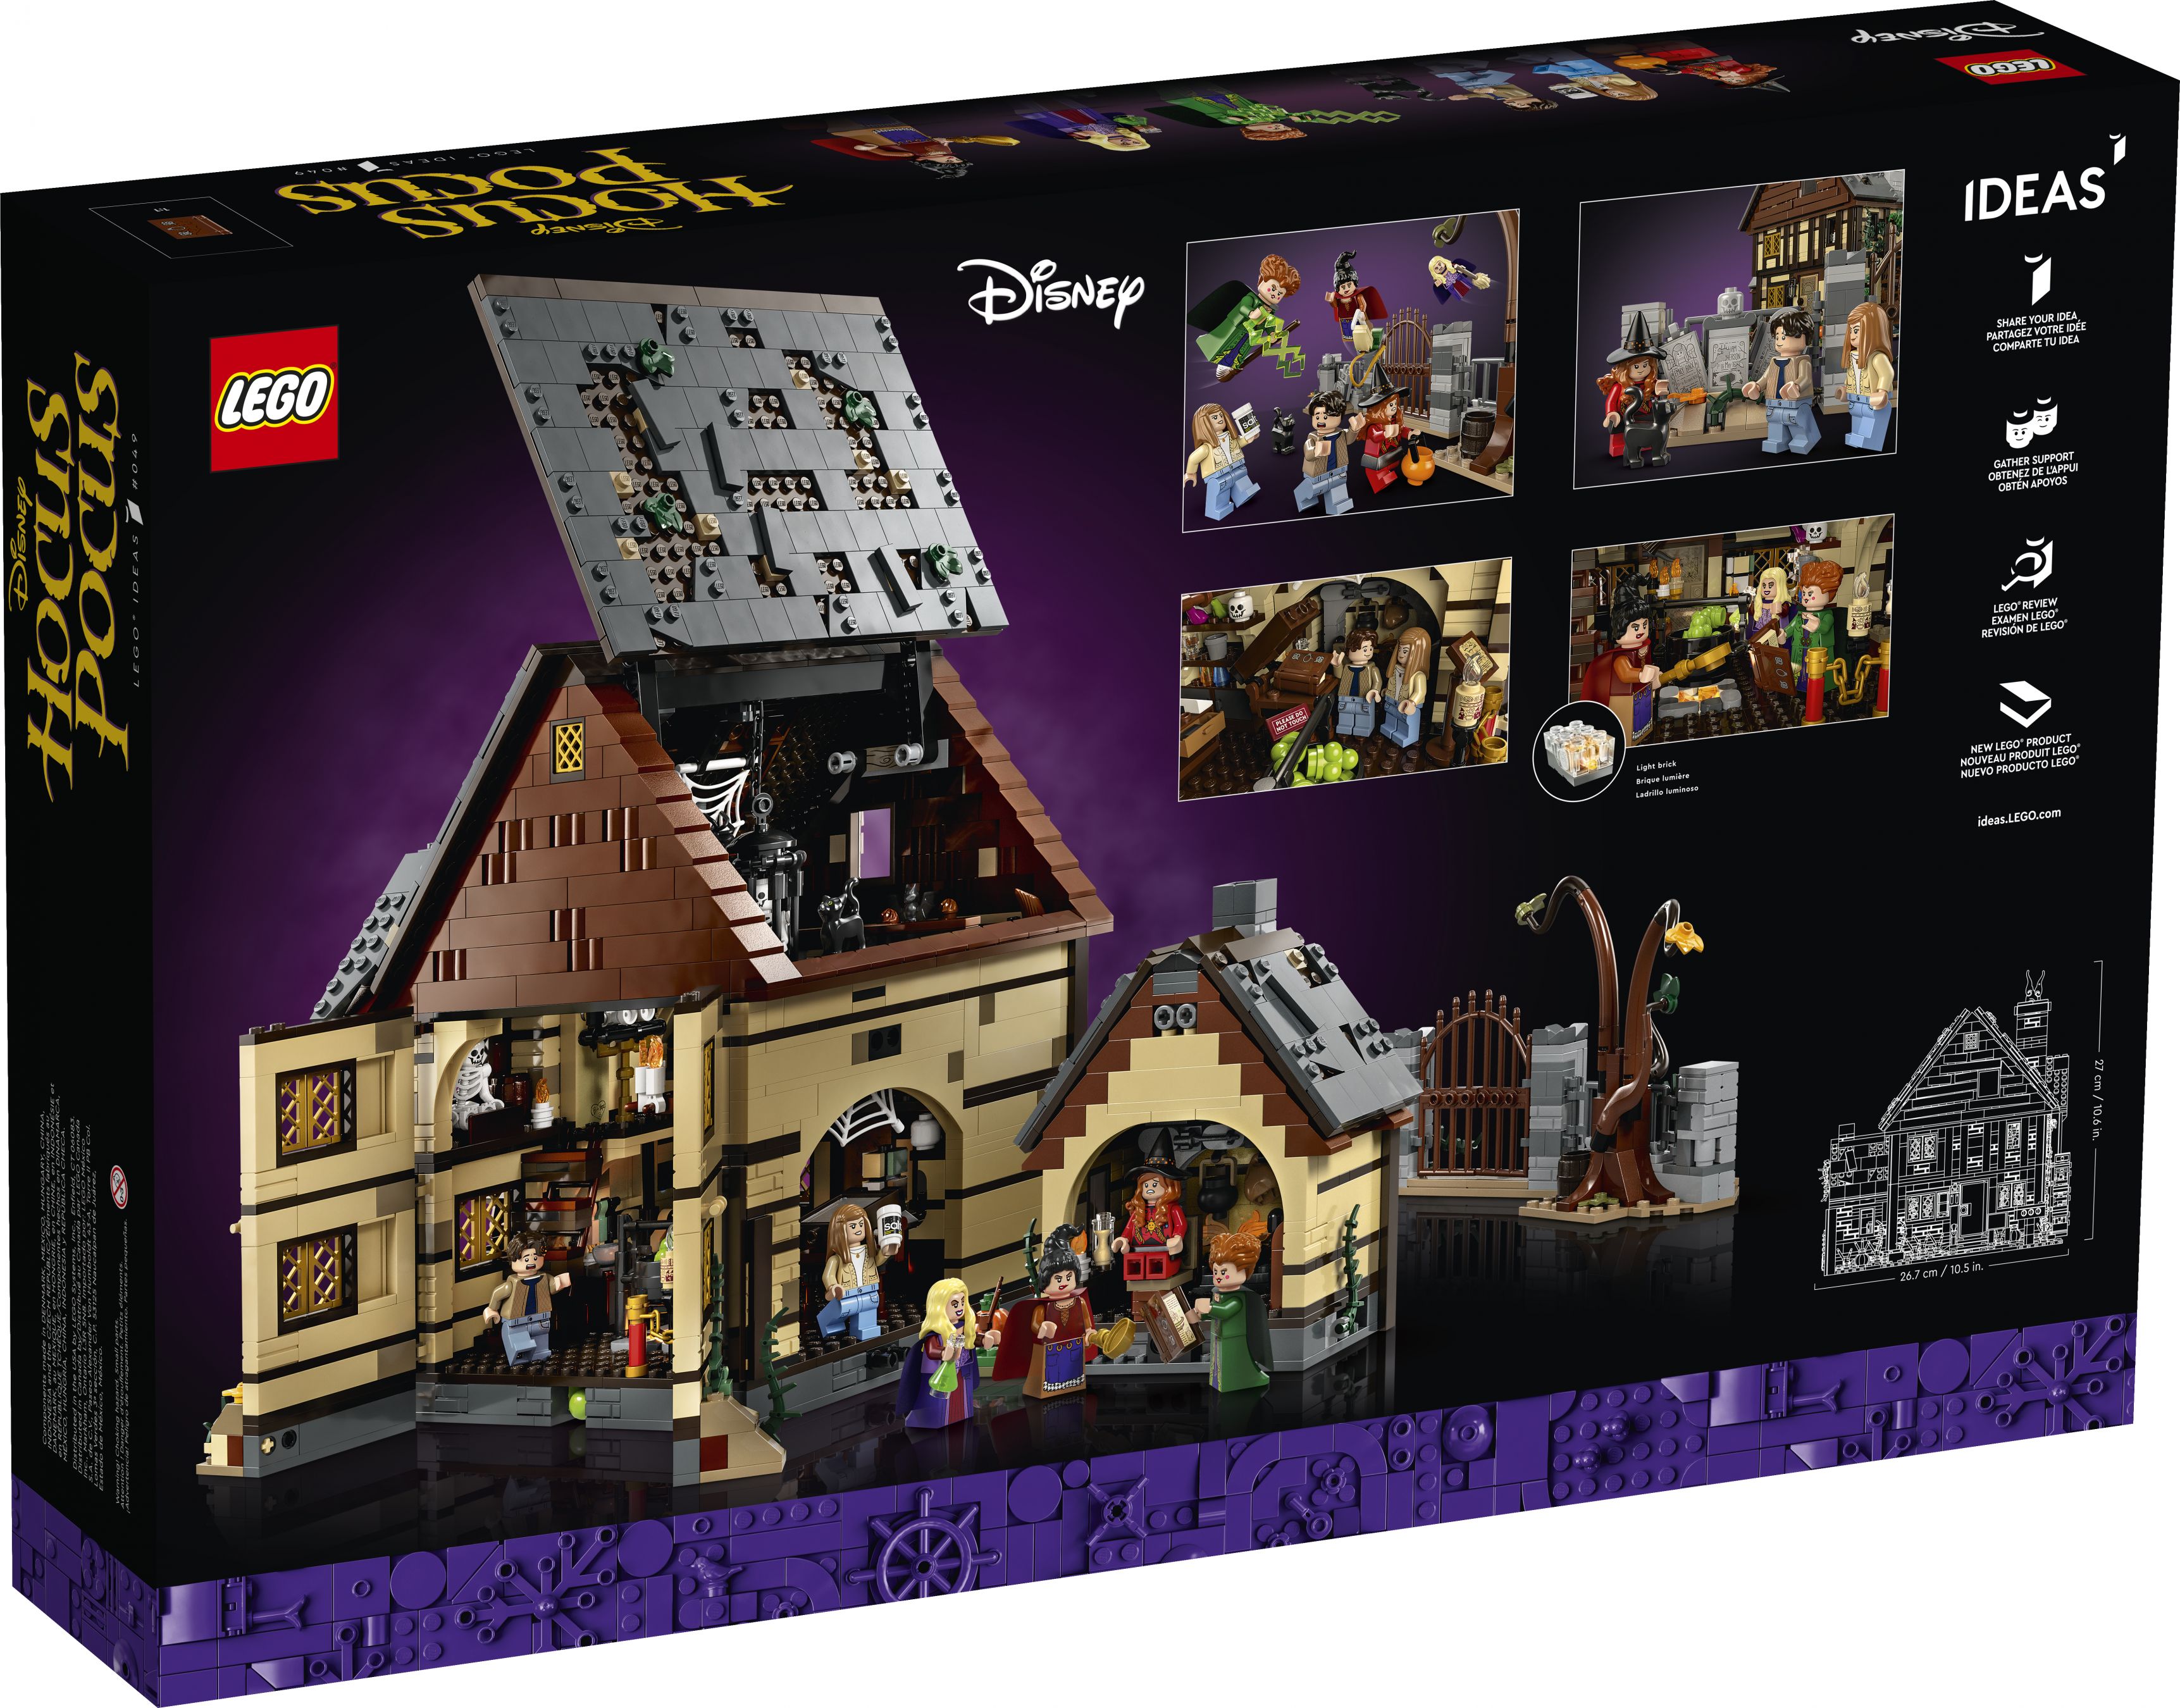 LEGO Ideas 21341 Disney Hocus Pocus: Das Hexenhaus der Sanderson-Schwestern LEGO_21341_Box5_v39.jpg